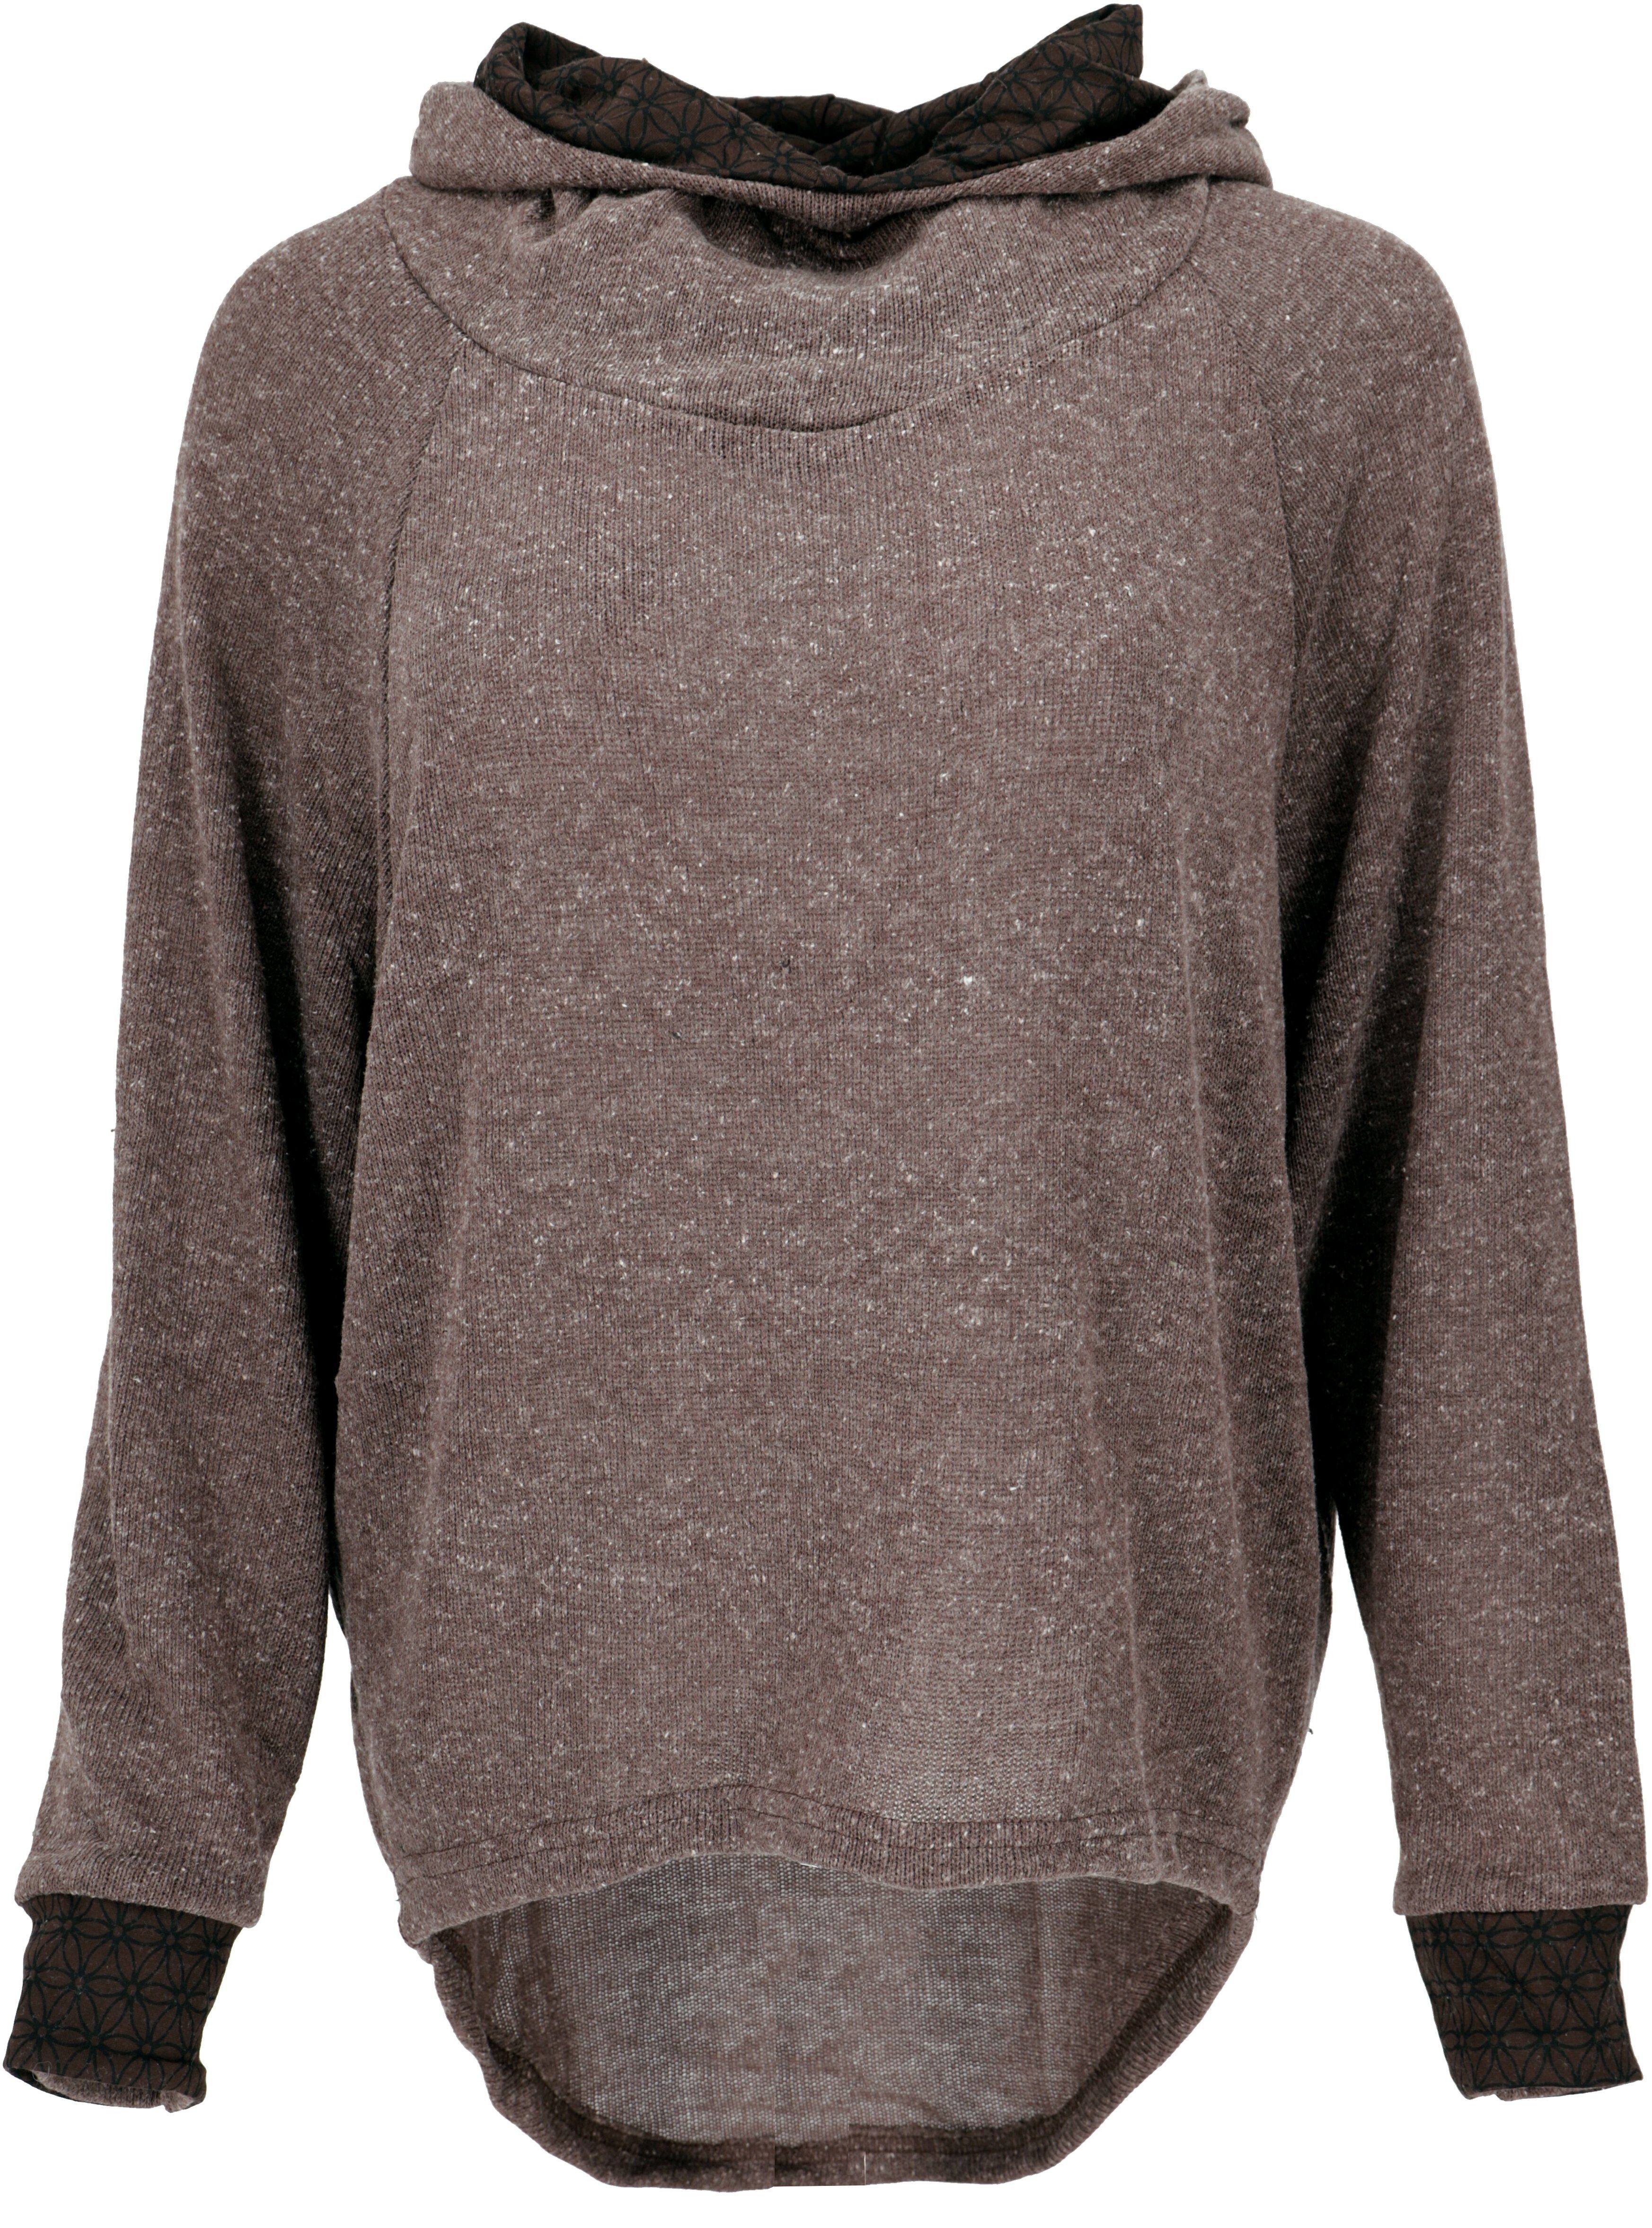 Kapuzenpullover alternative Guru-Shop Longsleeve Sweatshirt, Hoody, Pullover, Bekleidung -.. braun